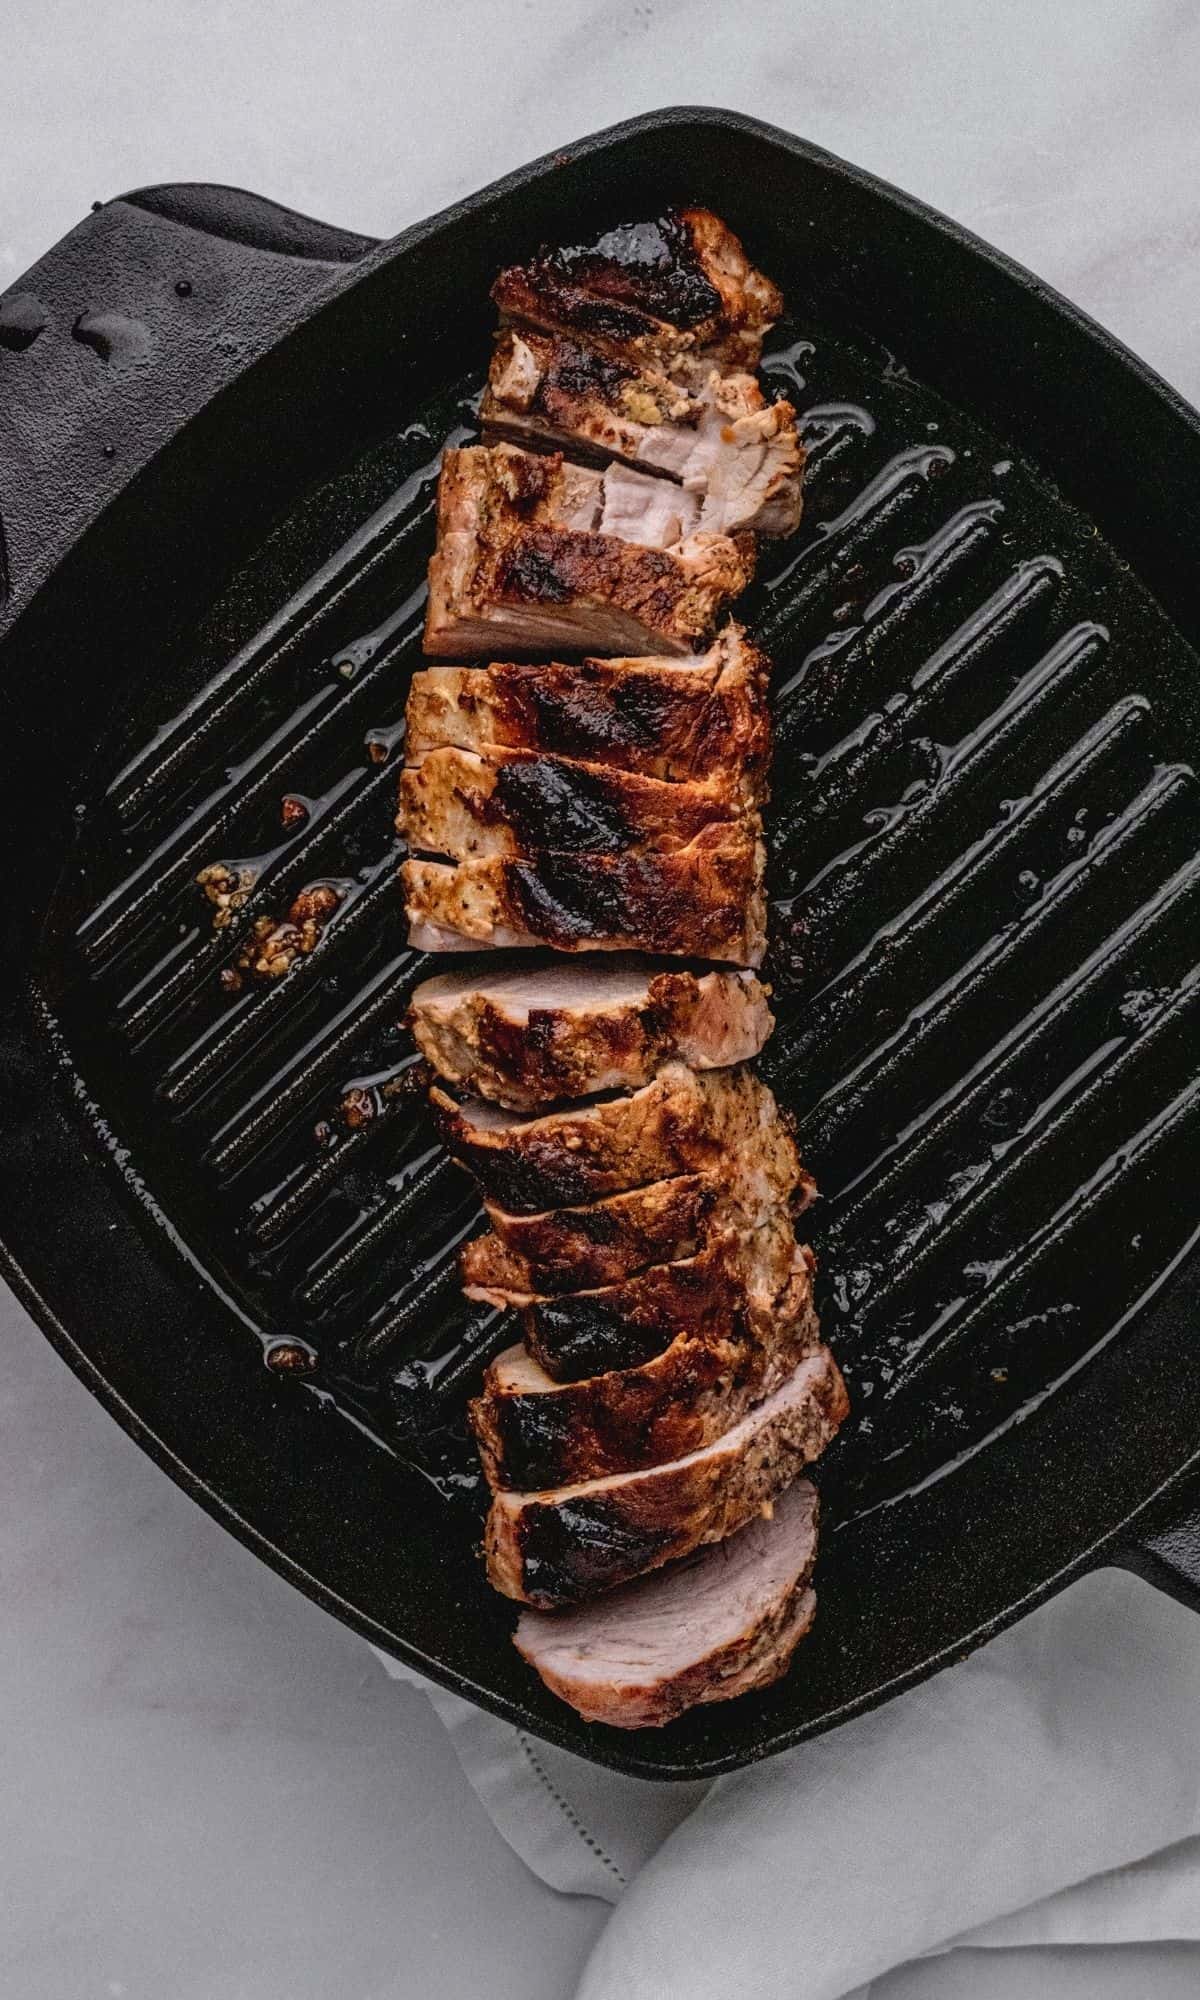 Sliced pork tenderloin in a cast iron skillet after resting.